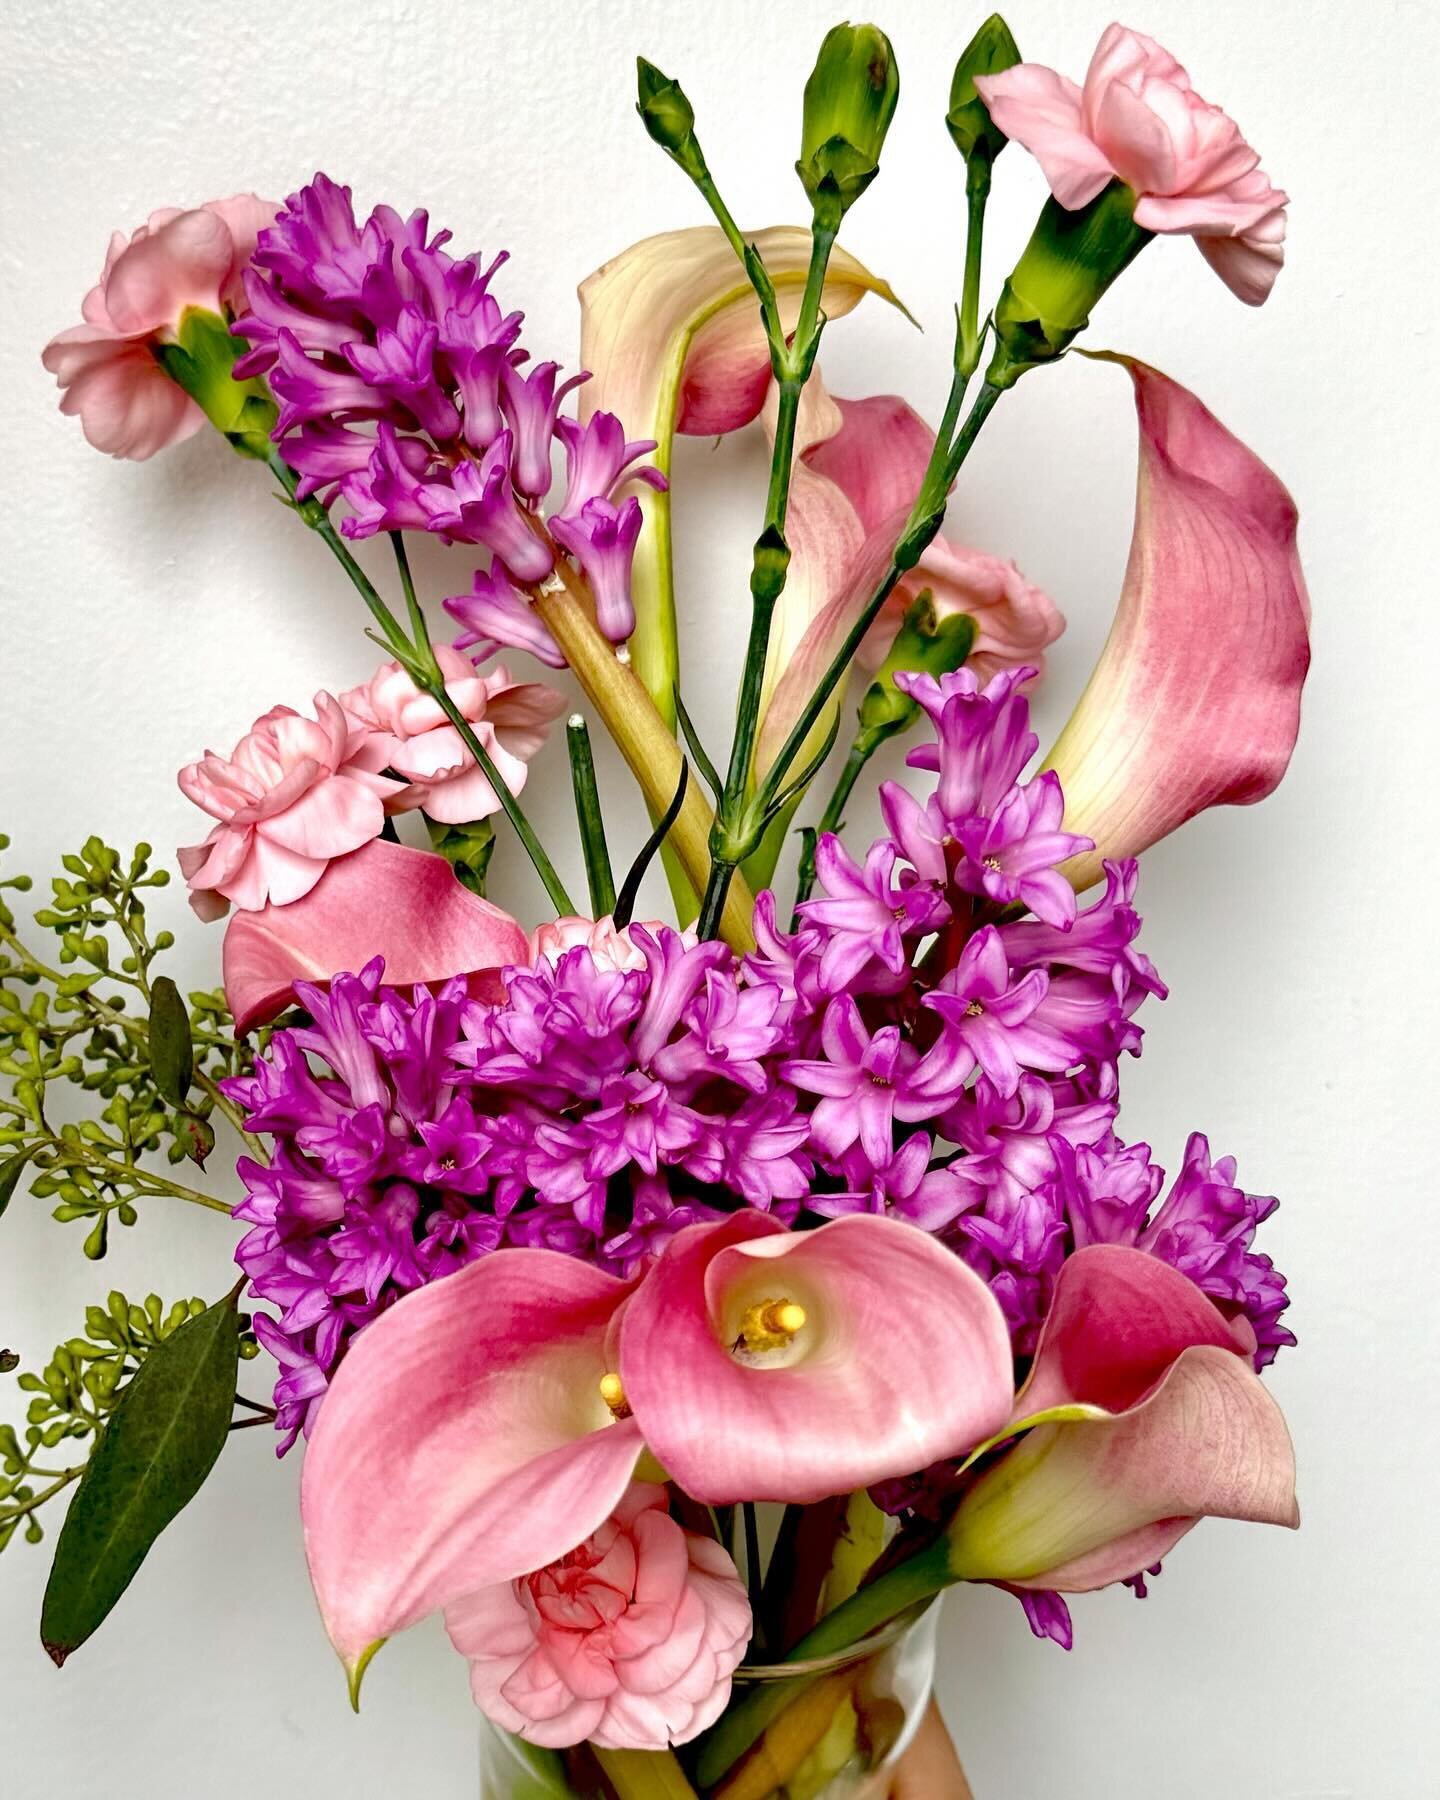 Oh hii!

#floraldesign #floralart #designyourlife